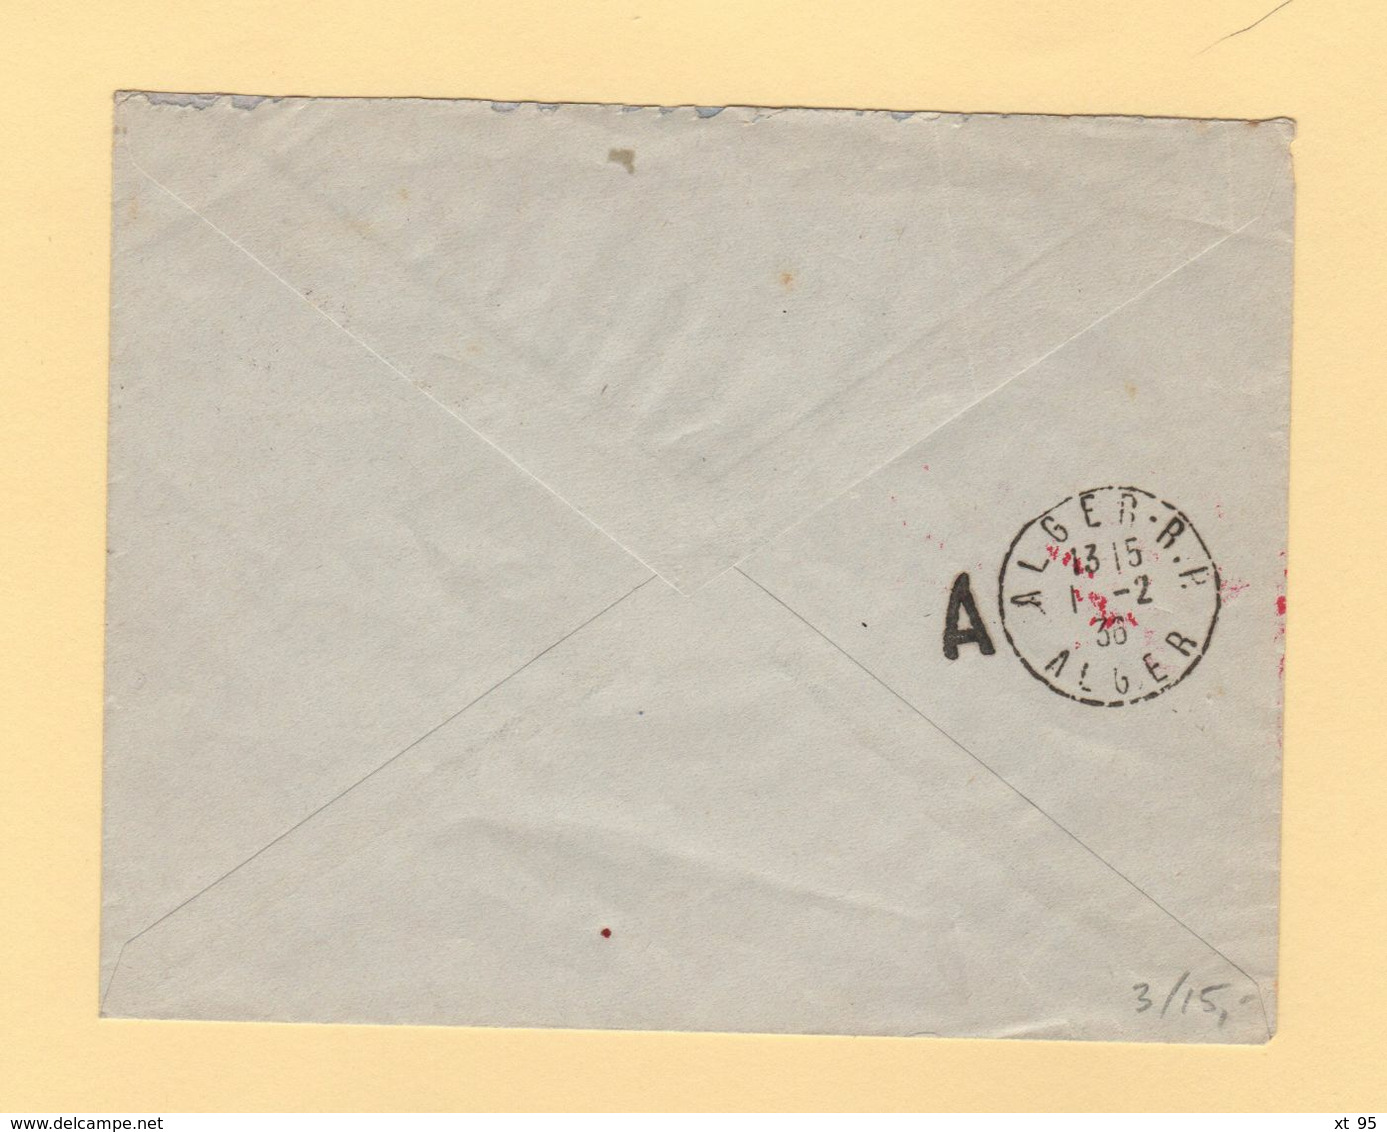 Tunisie - Premier Courrier Postal Aerien Tunisie Algerie - 1er Fevrier 1936 - Luchtpost